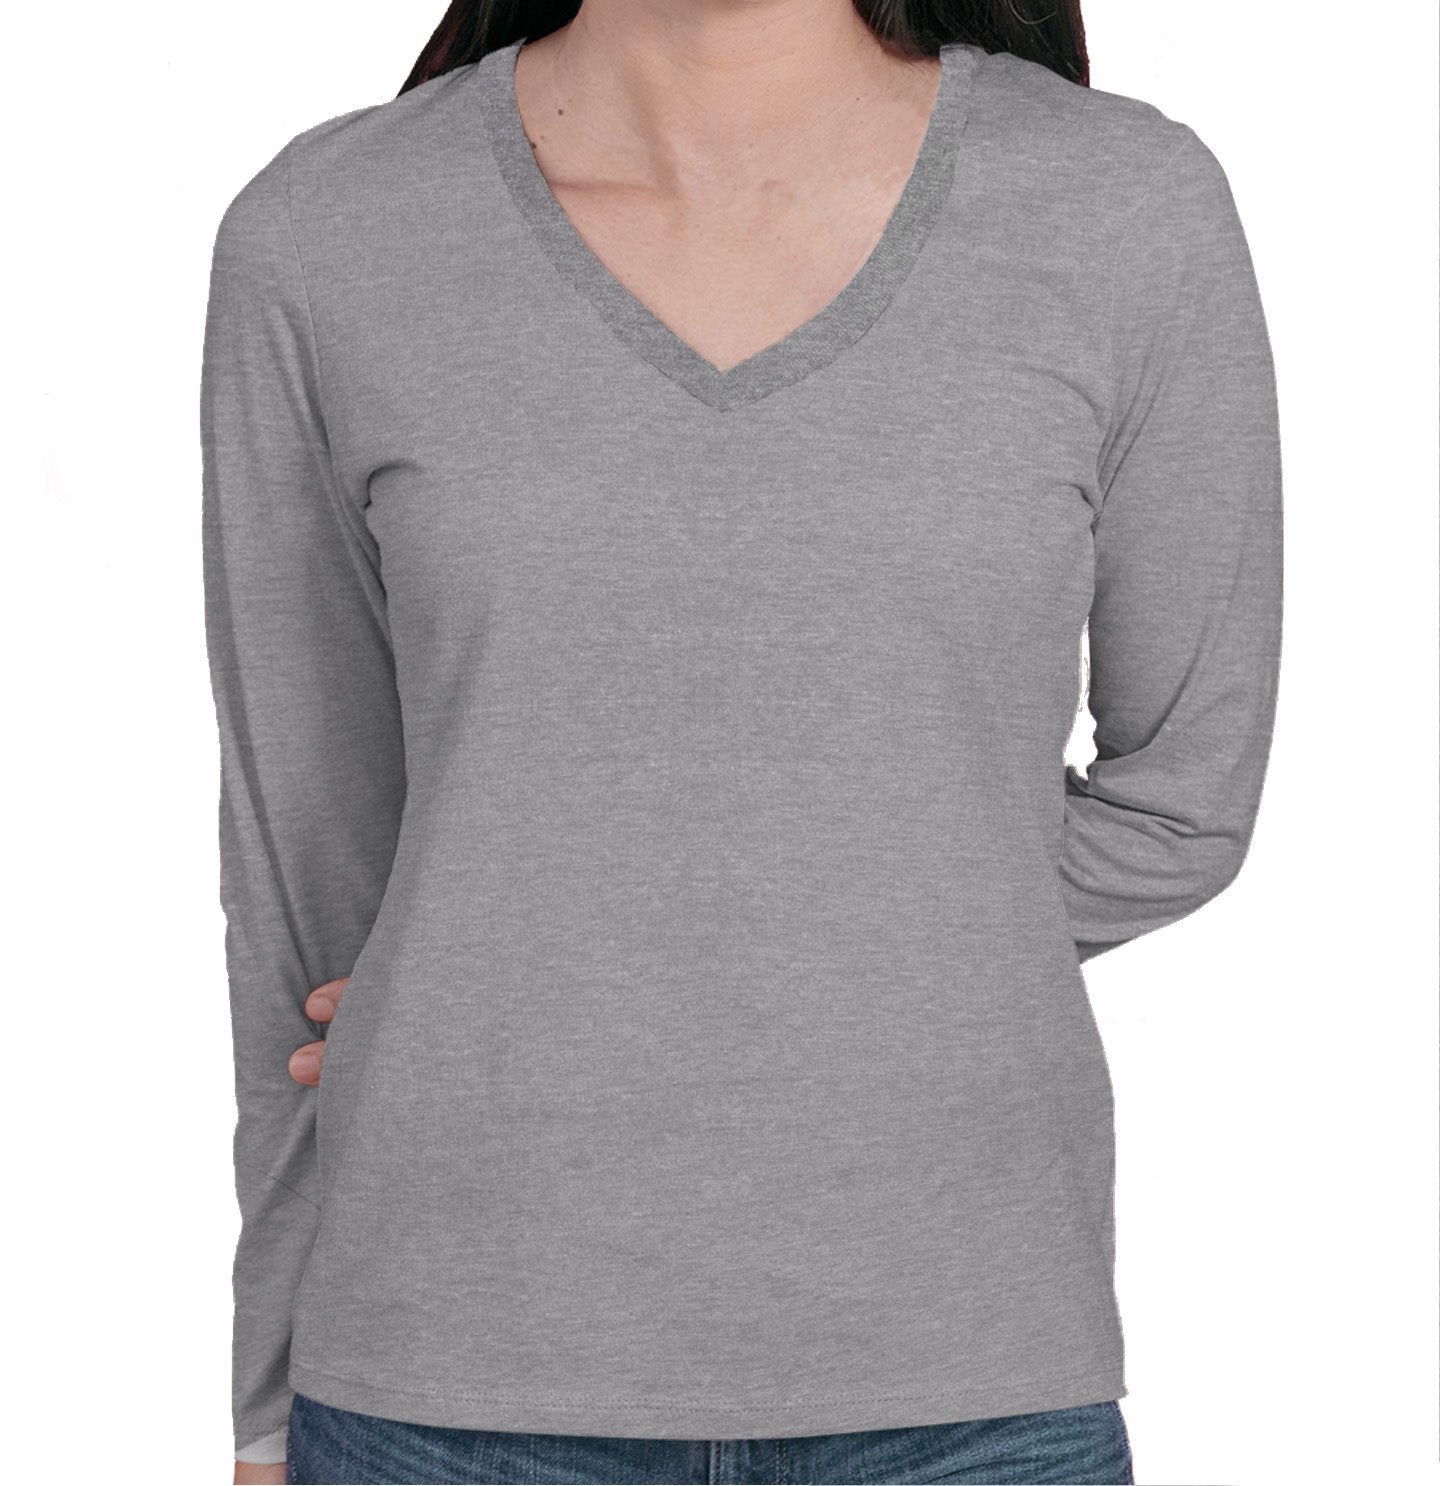 Golden Mom Illustration - Personalized Custom Women's V-Neck Long Sleeve T-Shirt